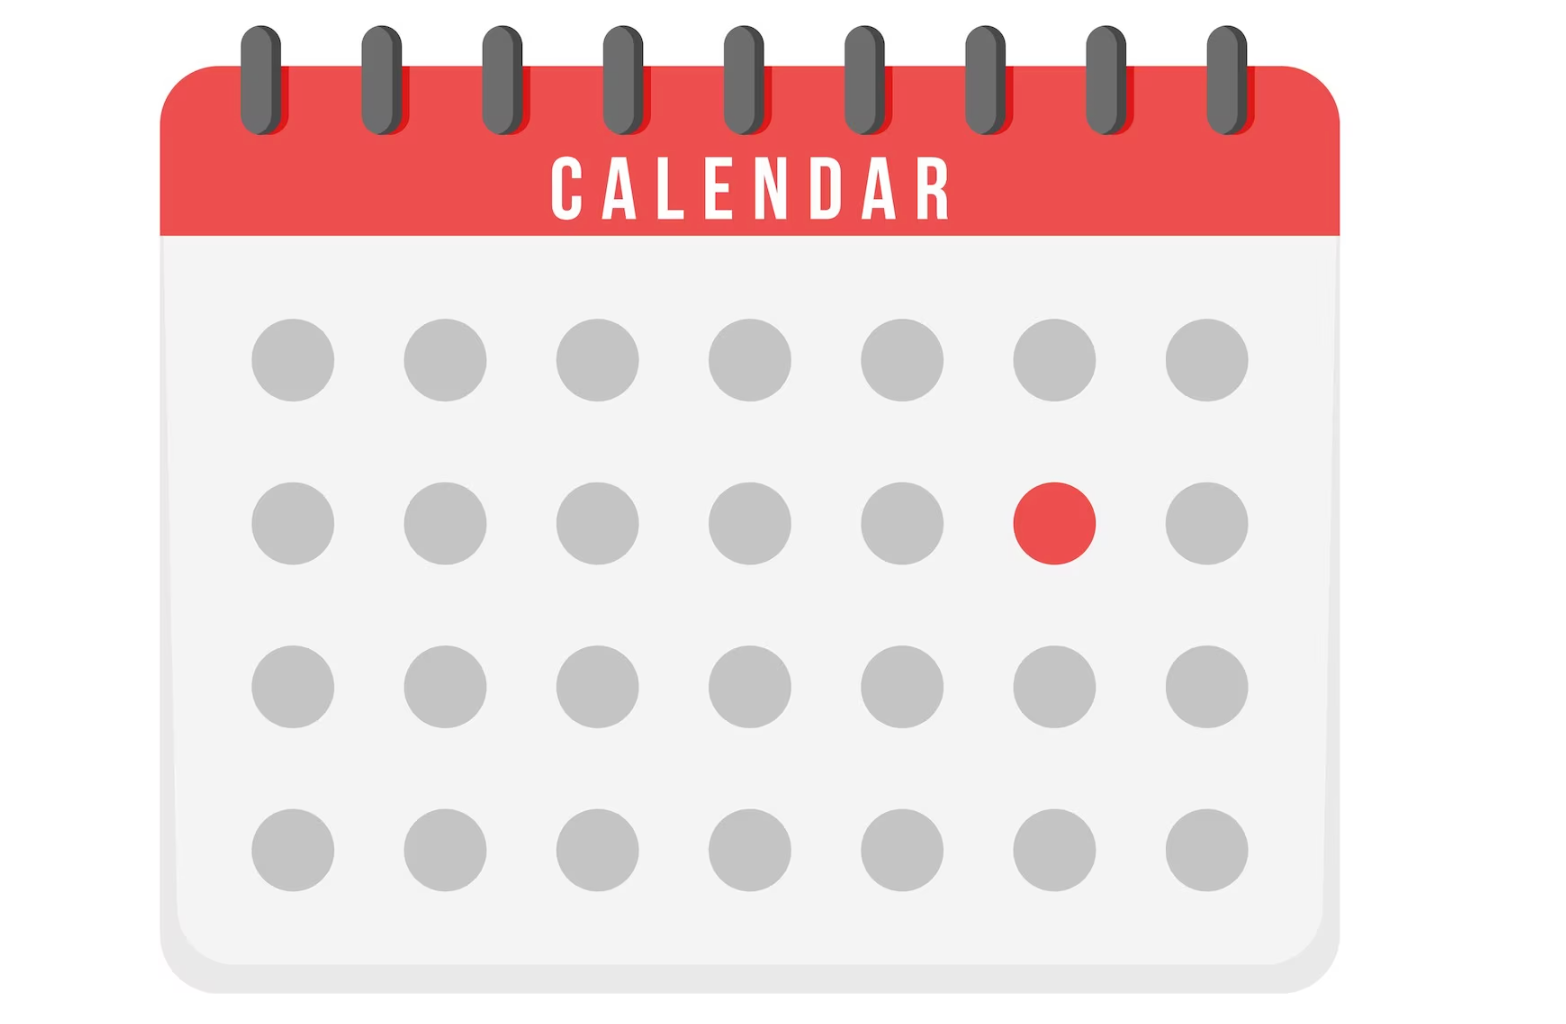 Google Calendar tips - connect your calendar 